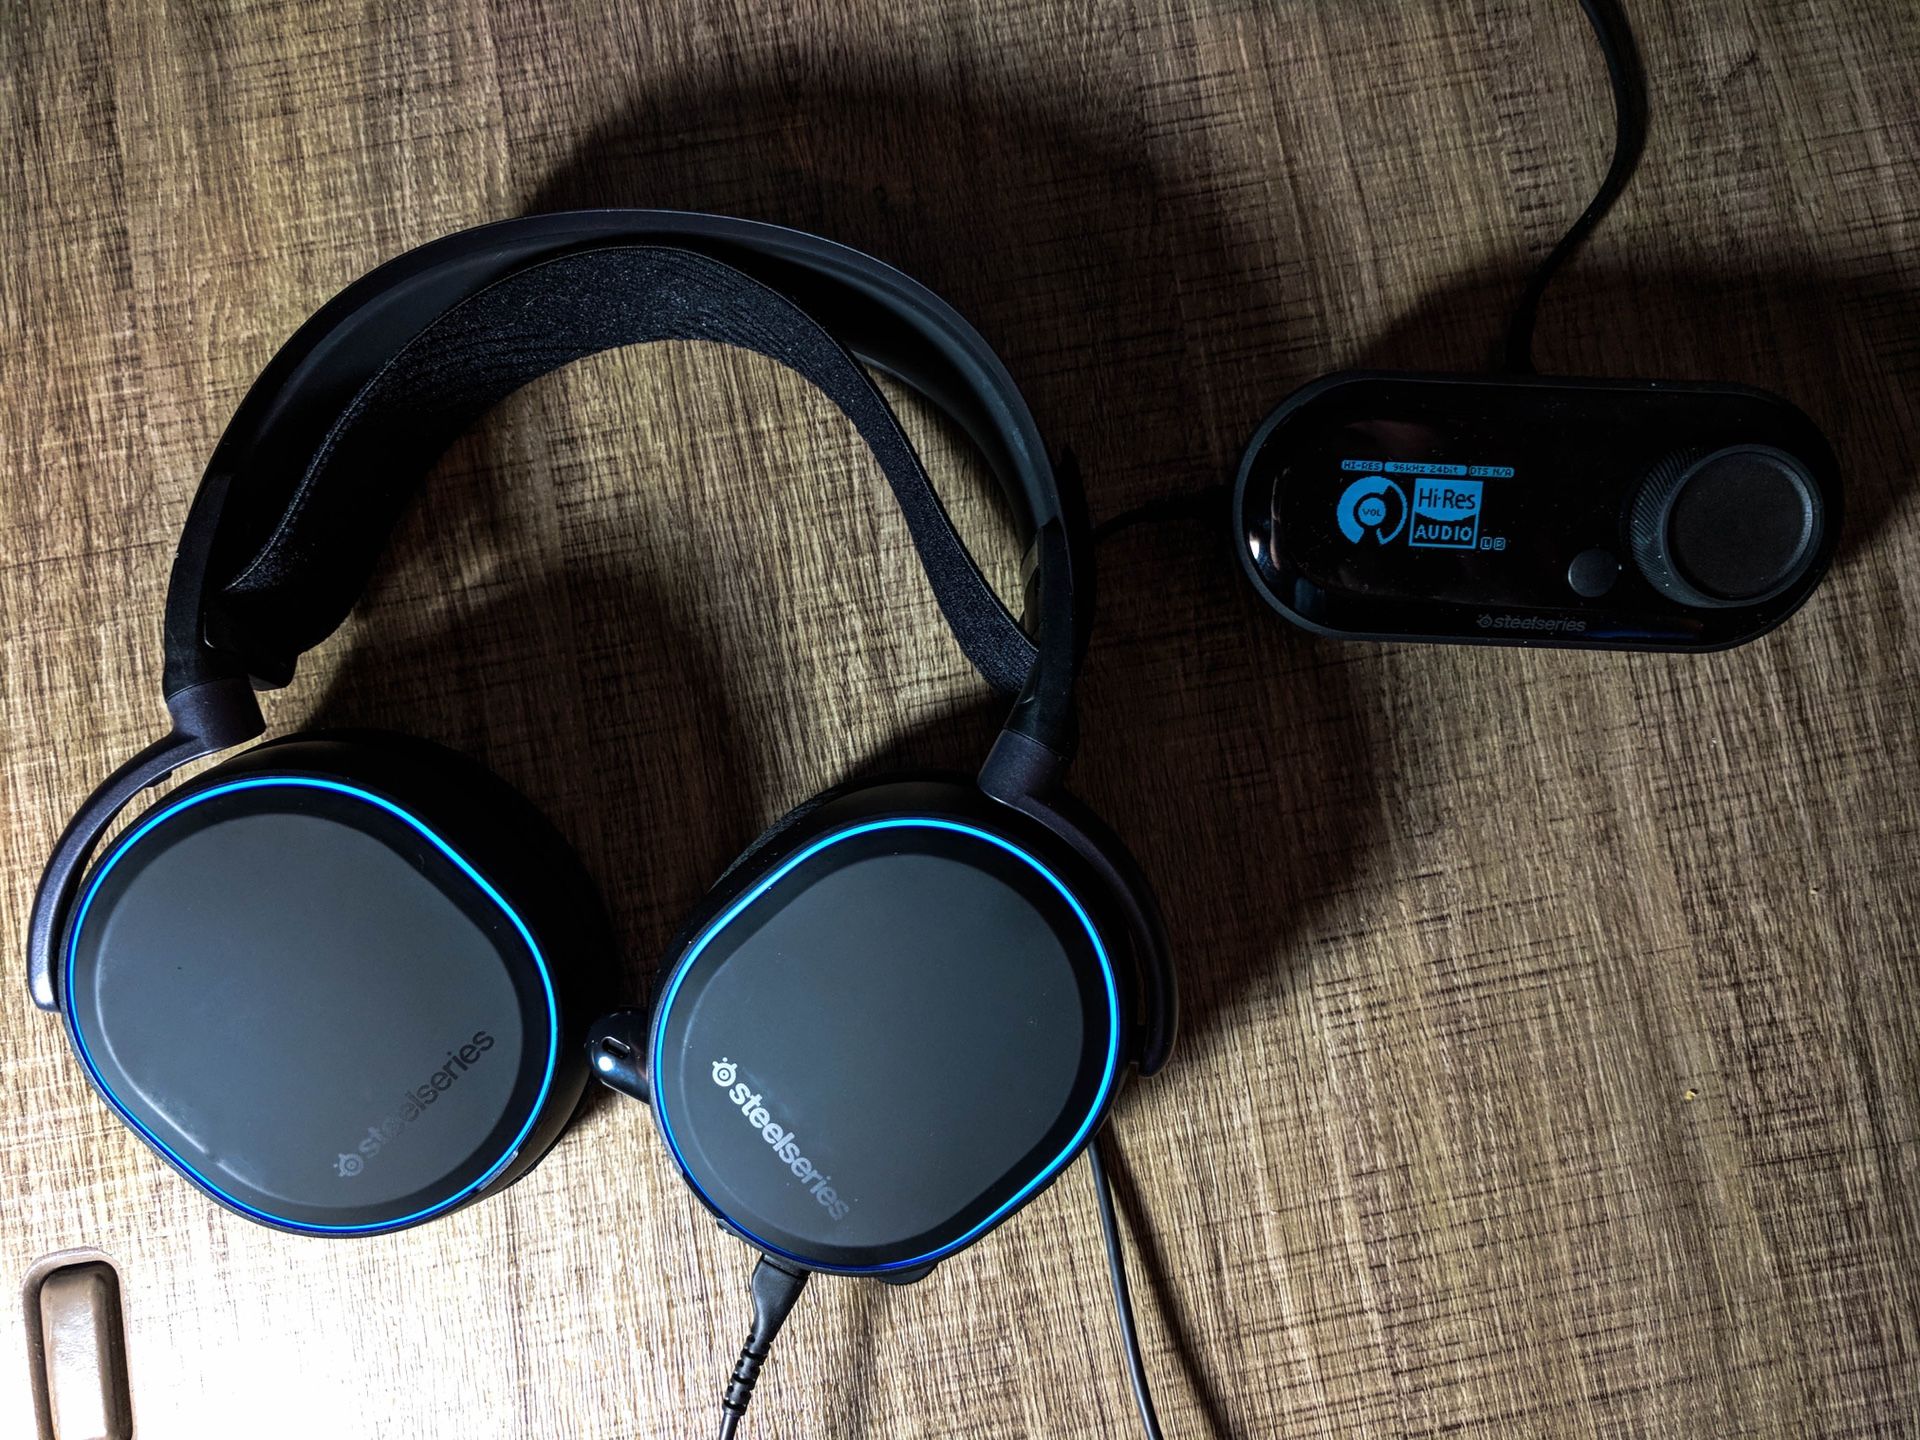 Steelseries arctis pro + gameDAC headphones